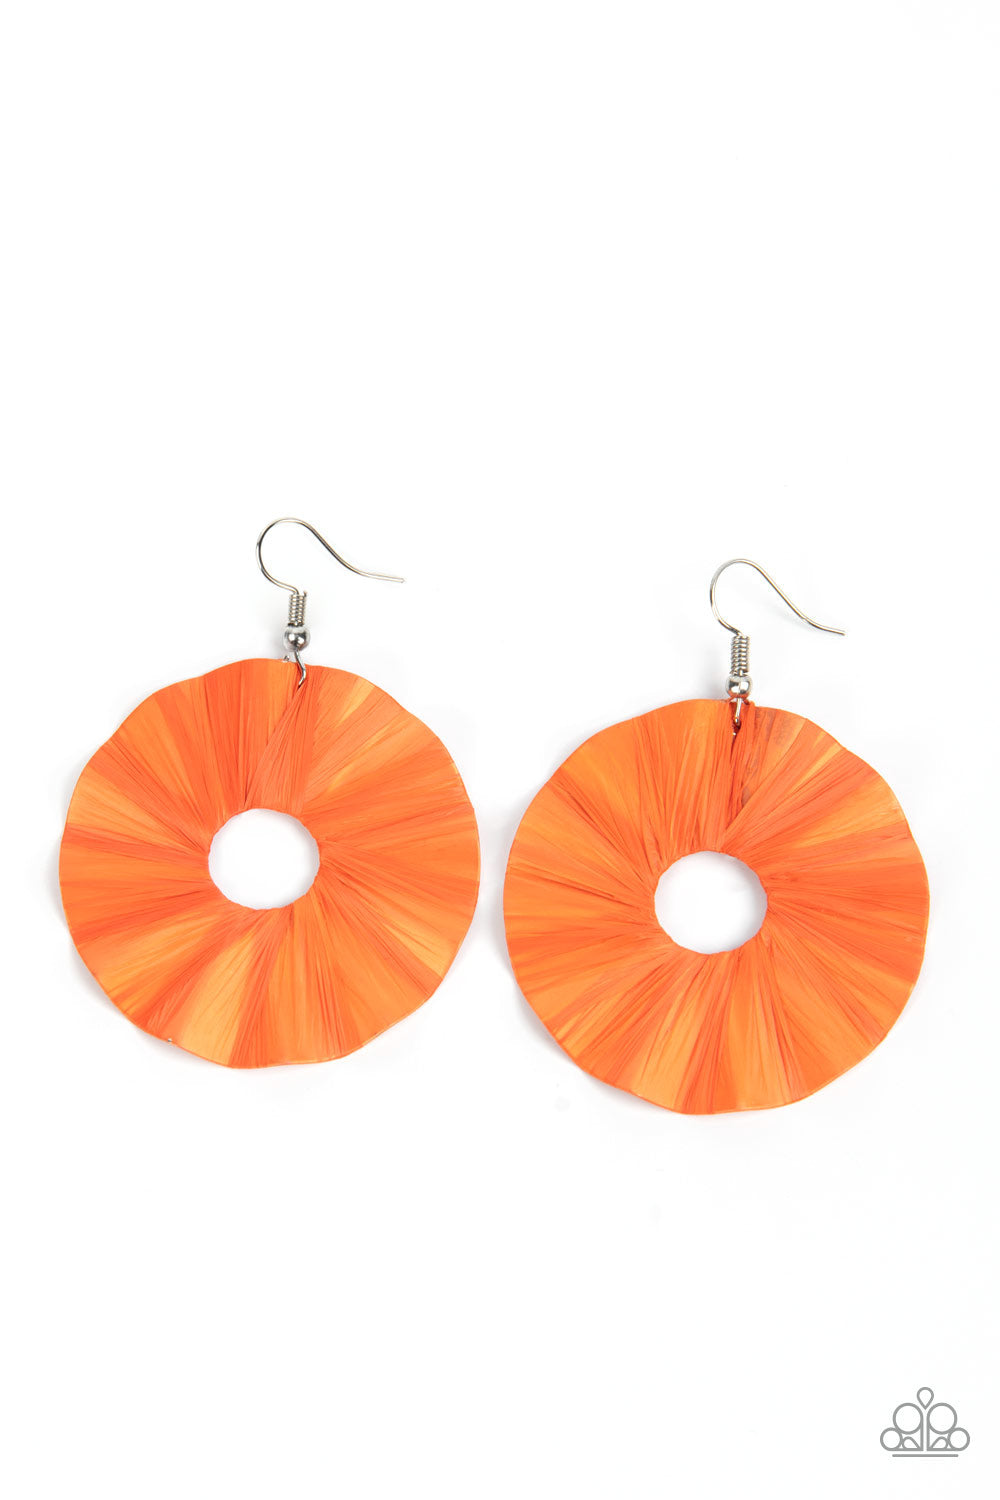 Paparazzi Fan the Breeze - Orange Earrings - A Finishing Touch Jewelry